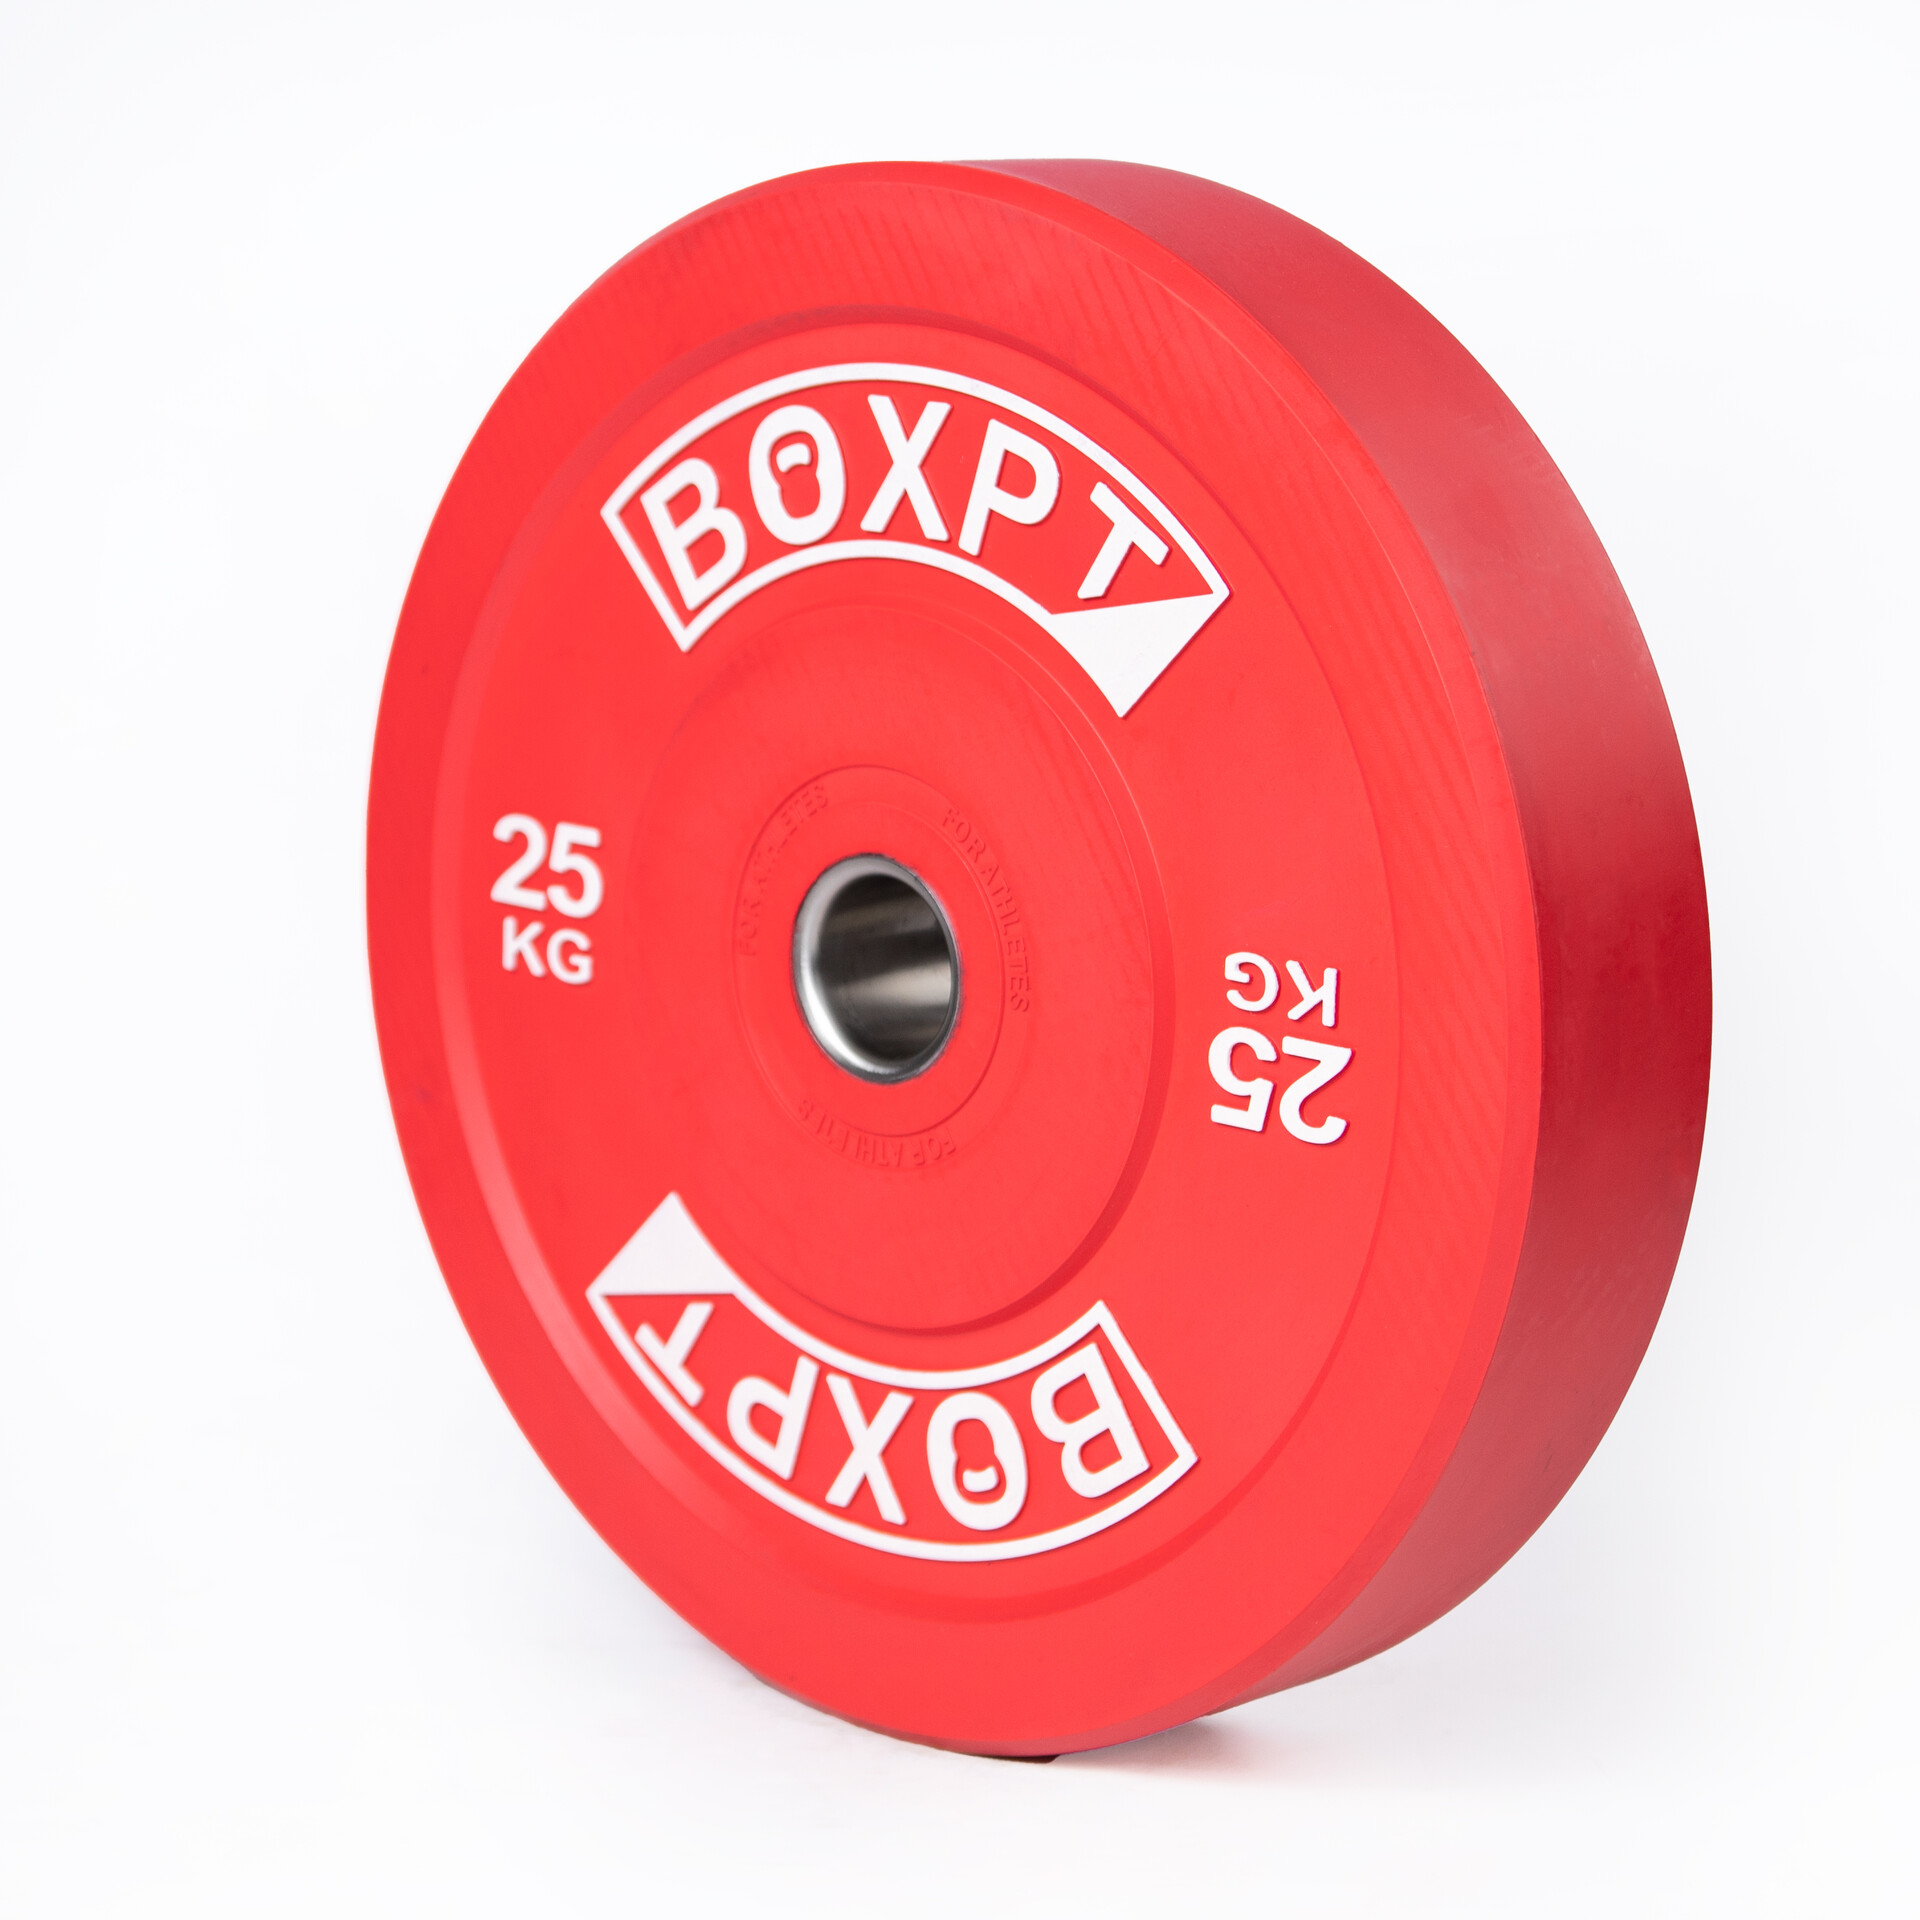 Disco Colorido Boxpt  25kg - Bumper | Sport Zone MKP